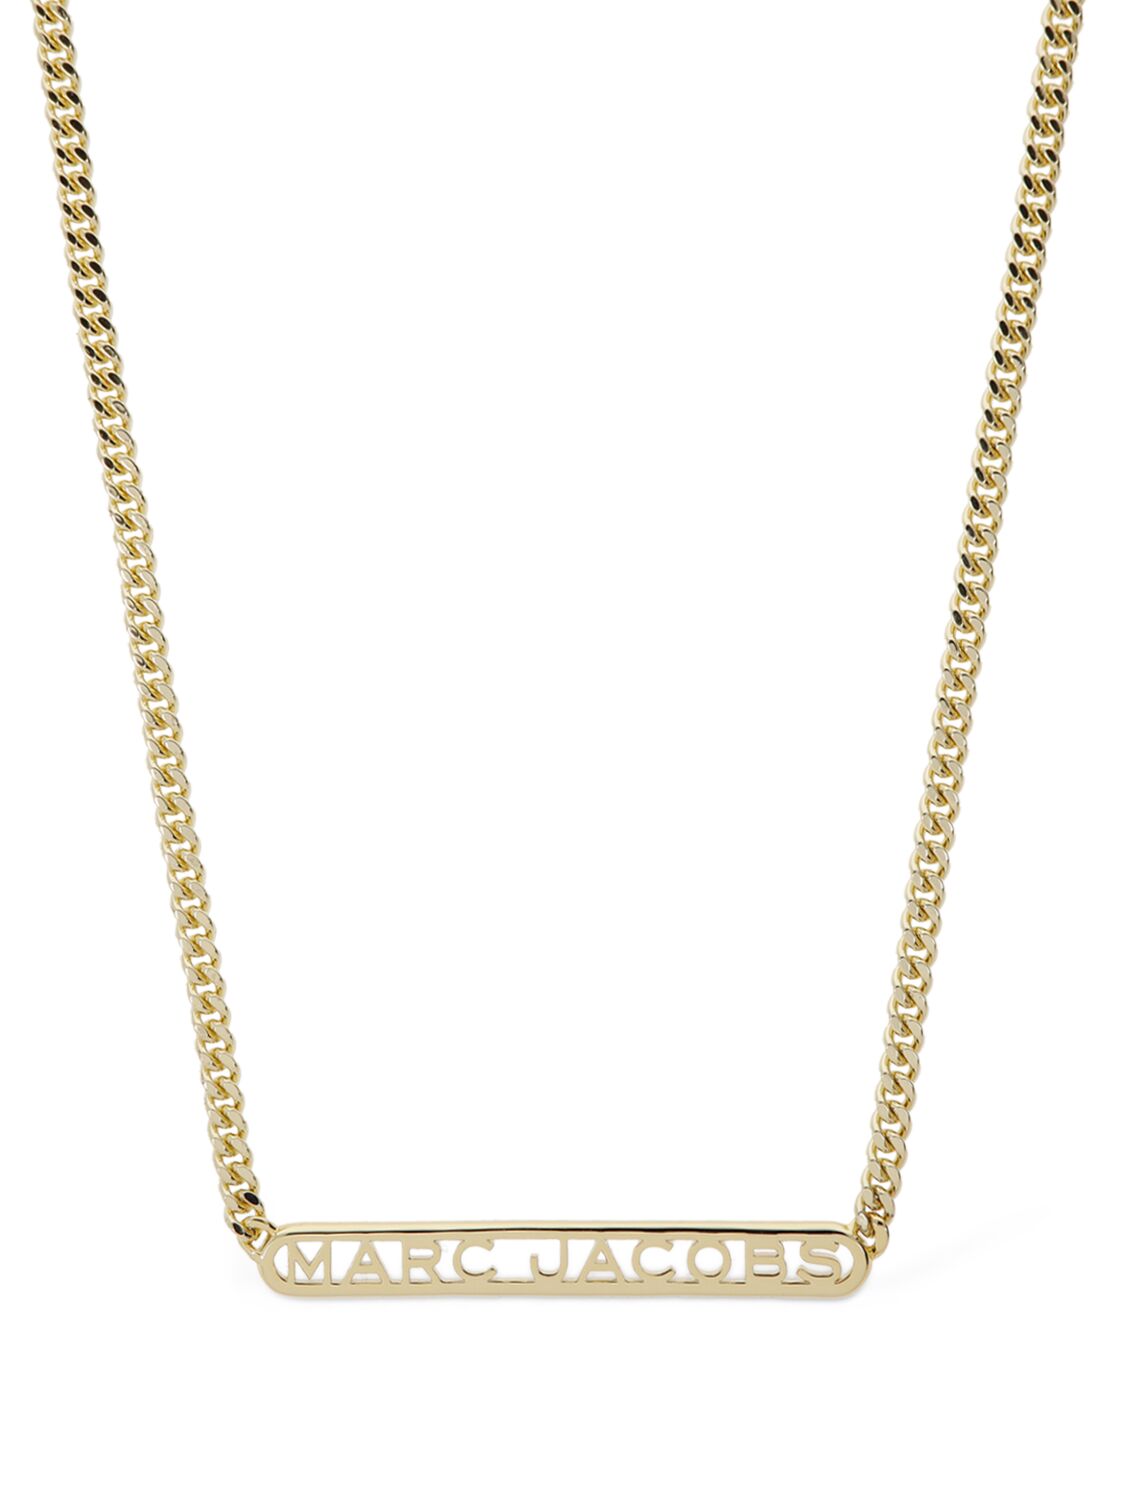 Marc Jacobs Monogram链条项链 In Gold